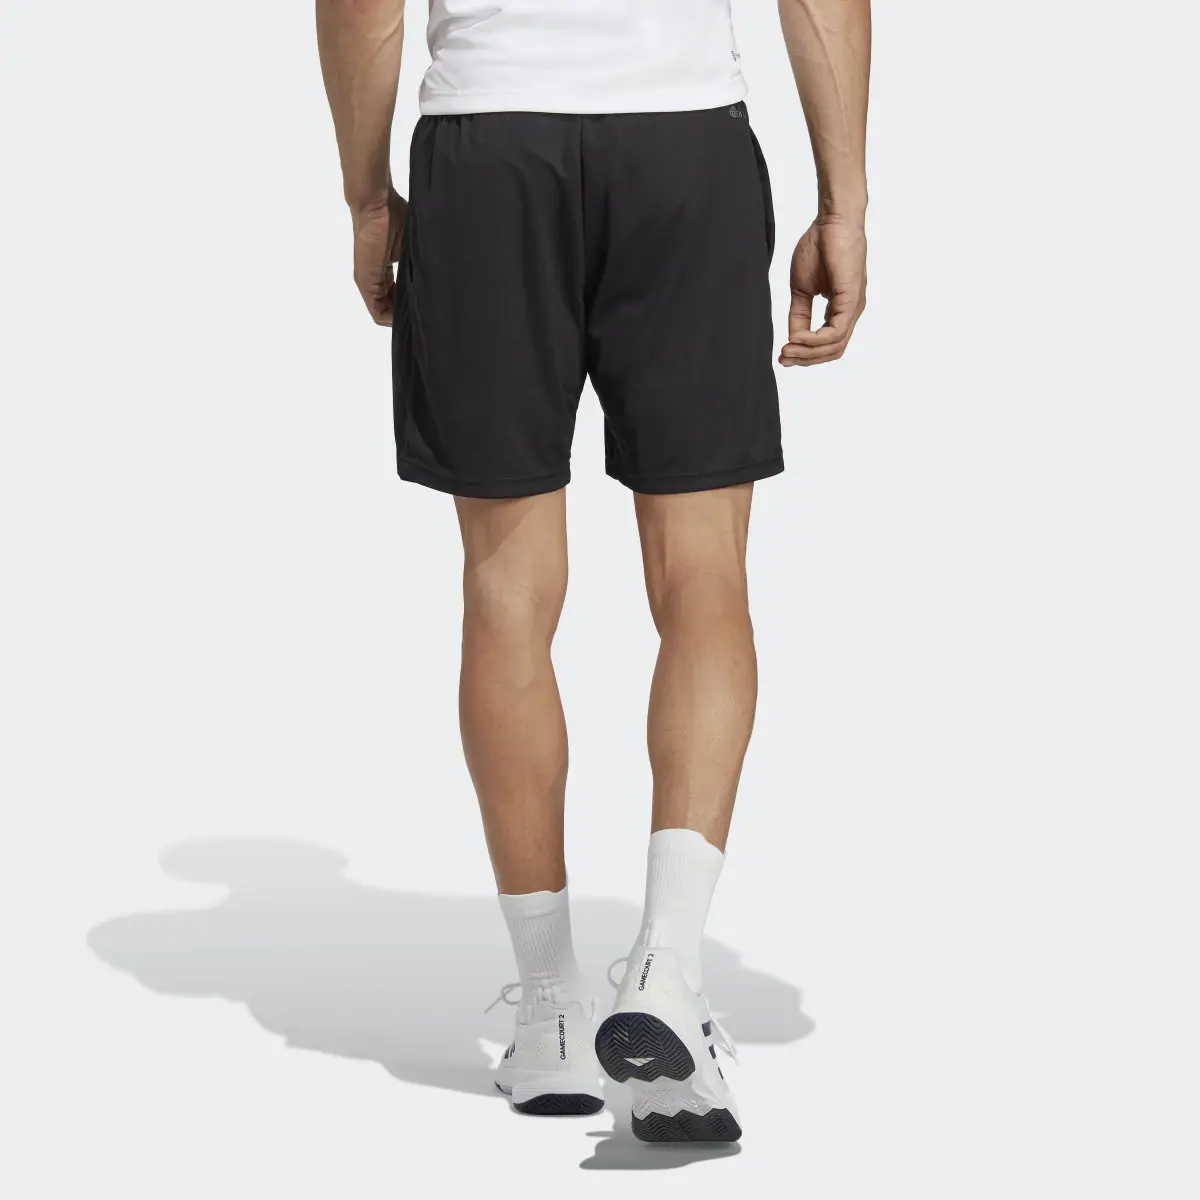 Adidas HEAT.RDY Knit Tennis Shorts. 2